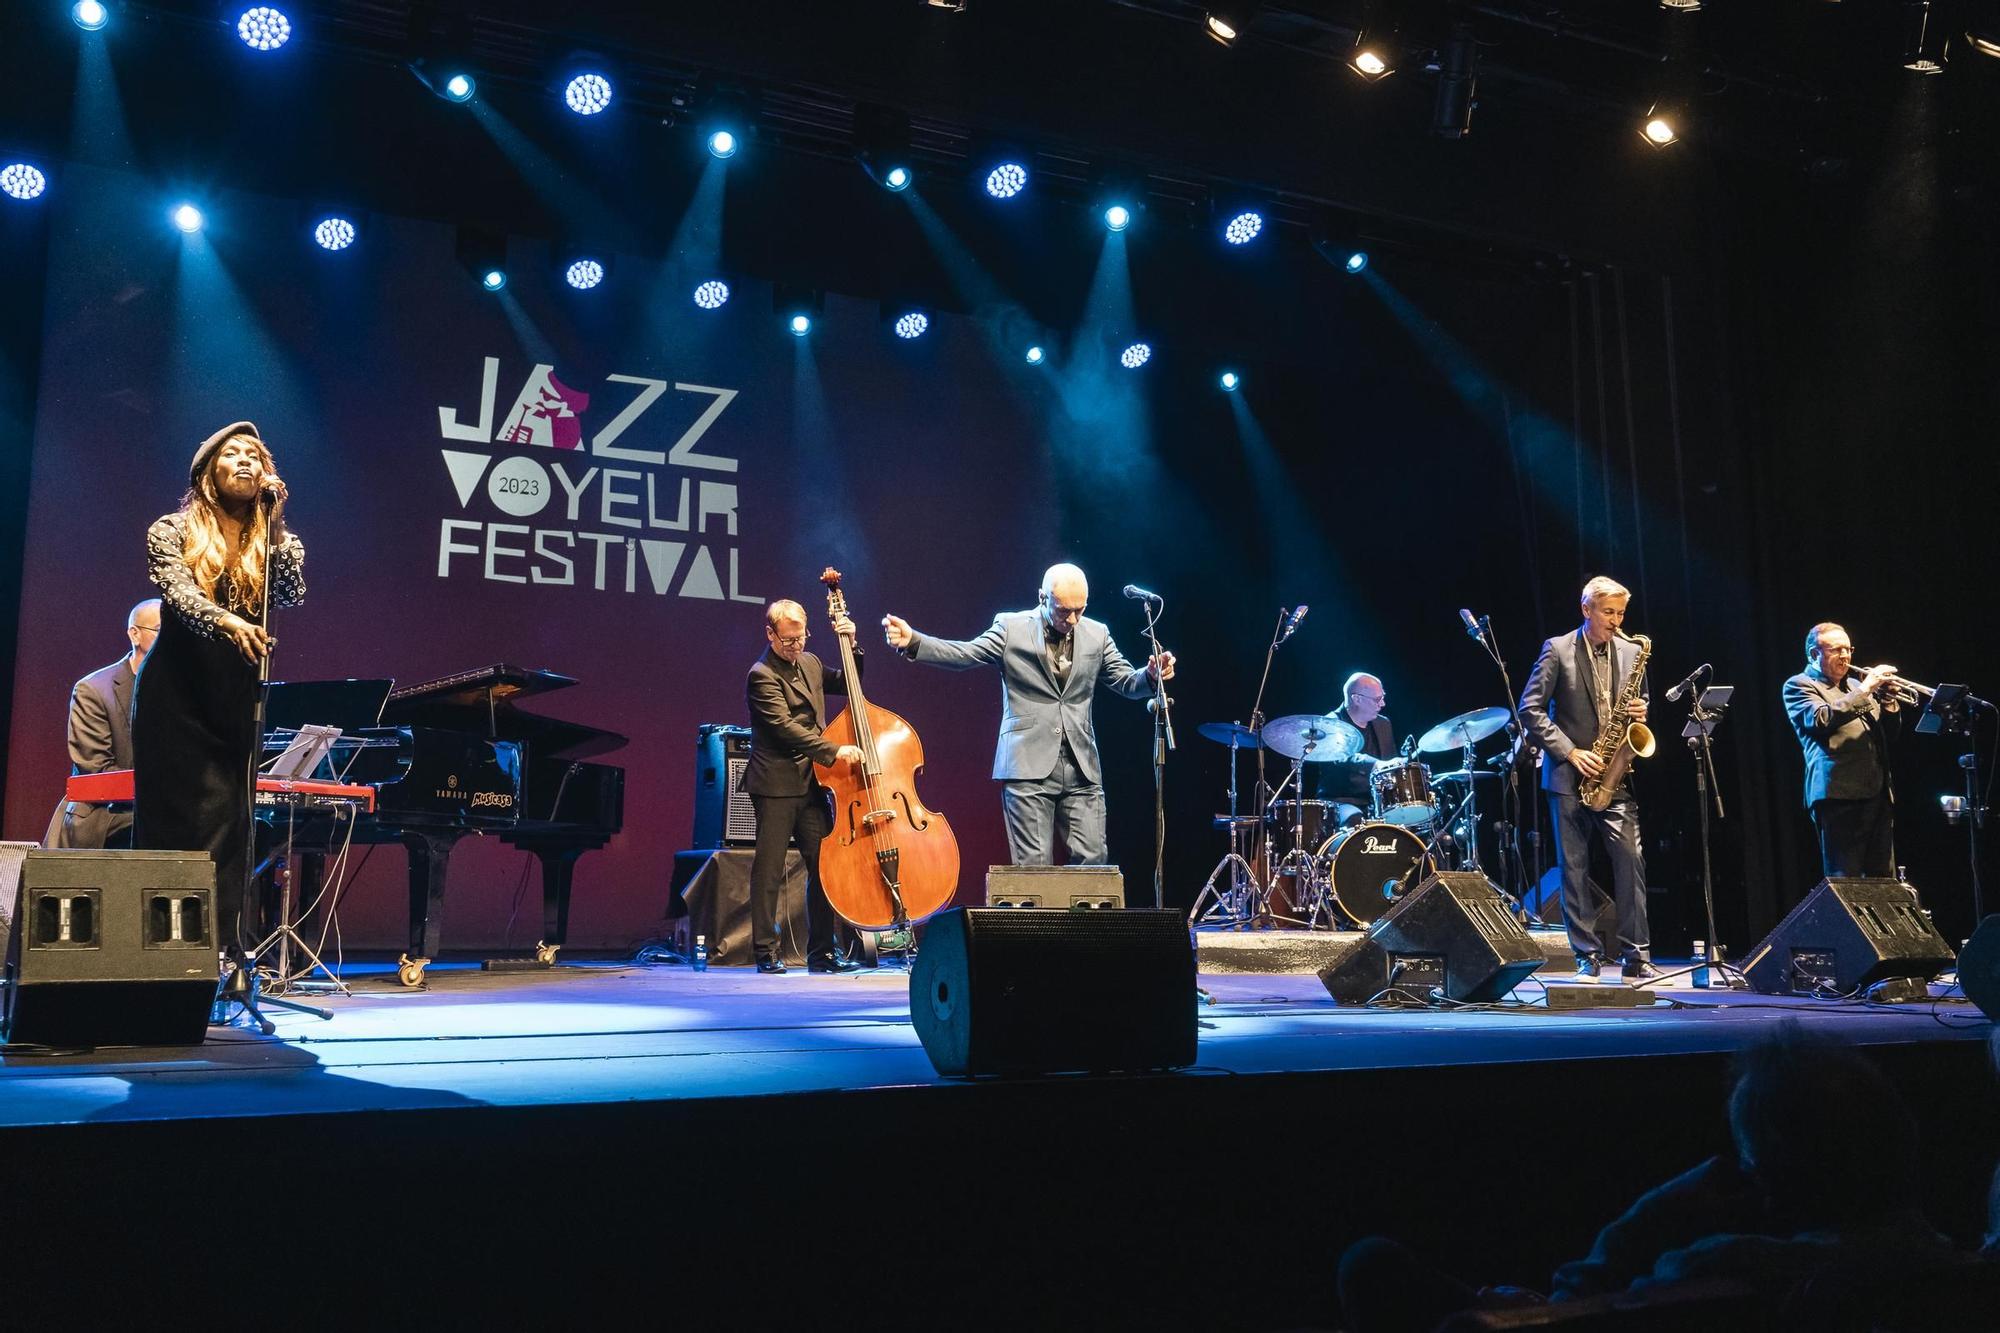 La banda británica Matt Bianco pone al día sus grandes éxitos en el Jazz Voyeur Festival de Mallorca